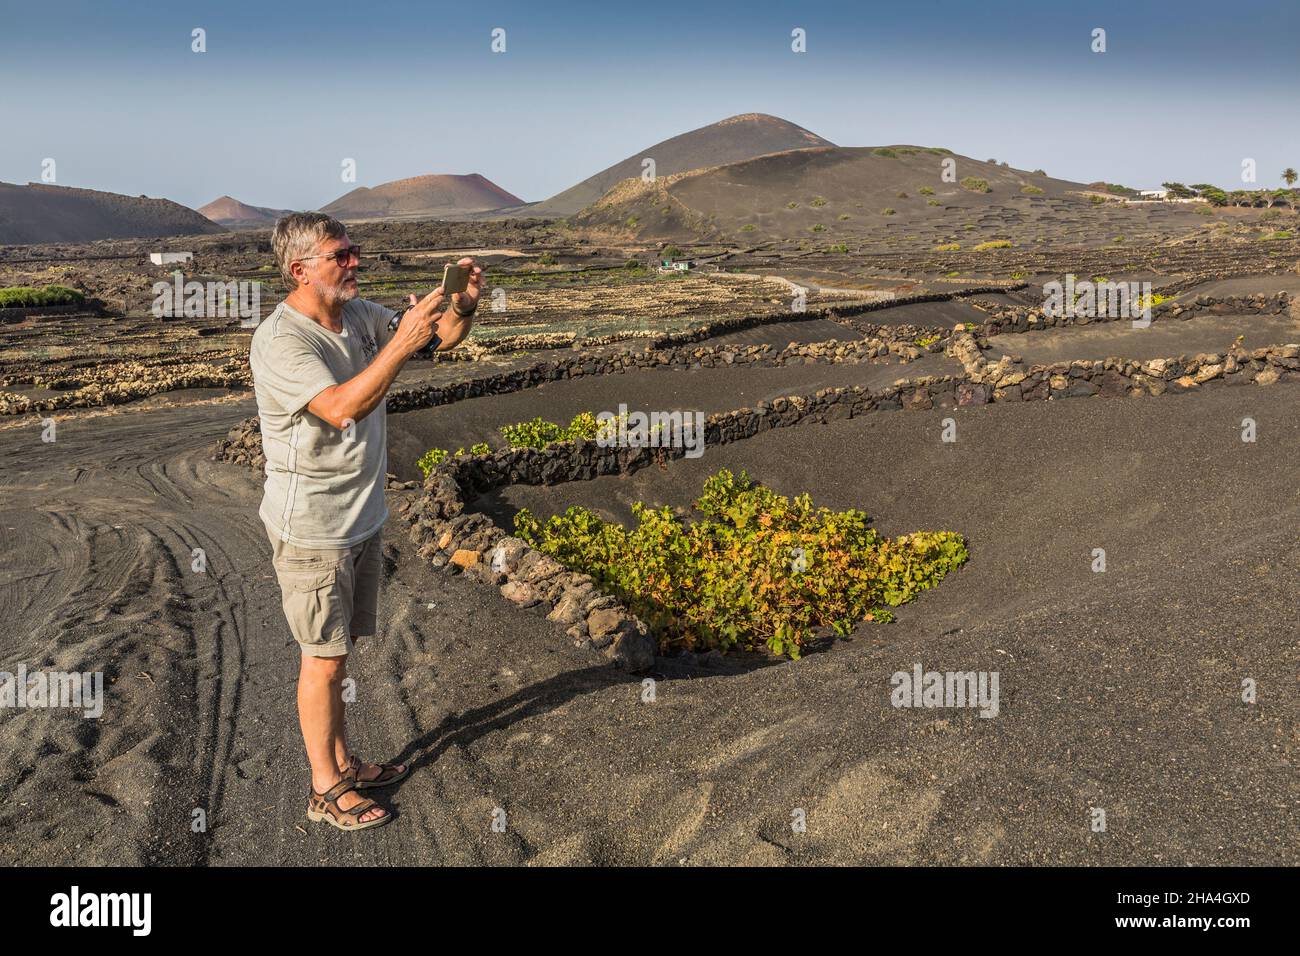 Der 63-jährige Mann fotografiert die Reben mit seinem Smartphone, Weinbau, Trockenbaumethode, Vulkanlandschaft in der Nähe von La geria, lanzarote, kanarische Inseln, spanien, europa Stockfoto